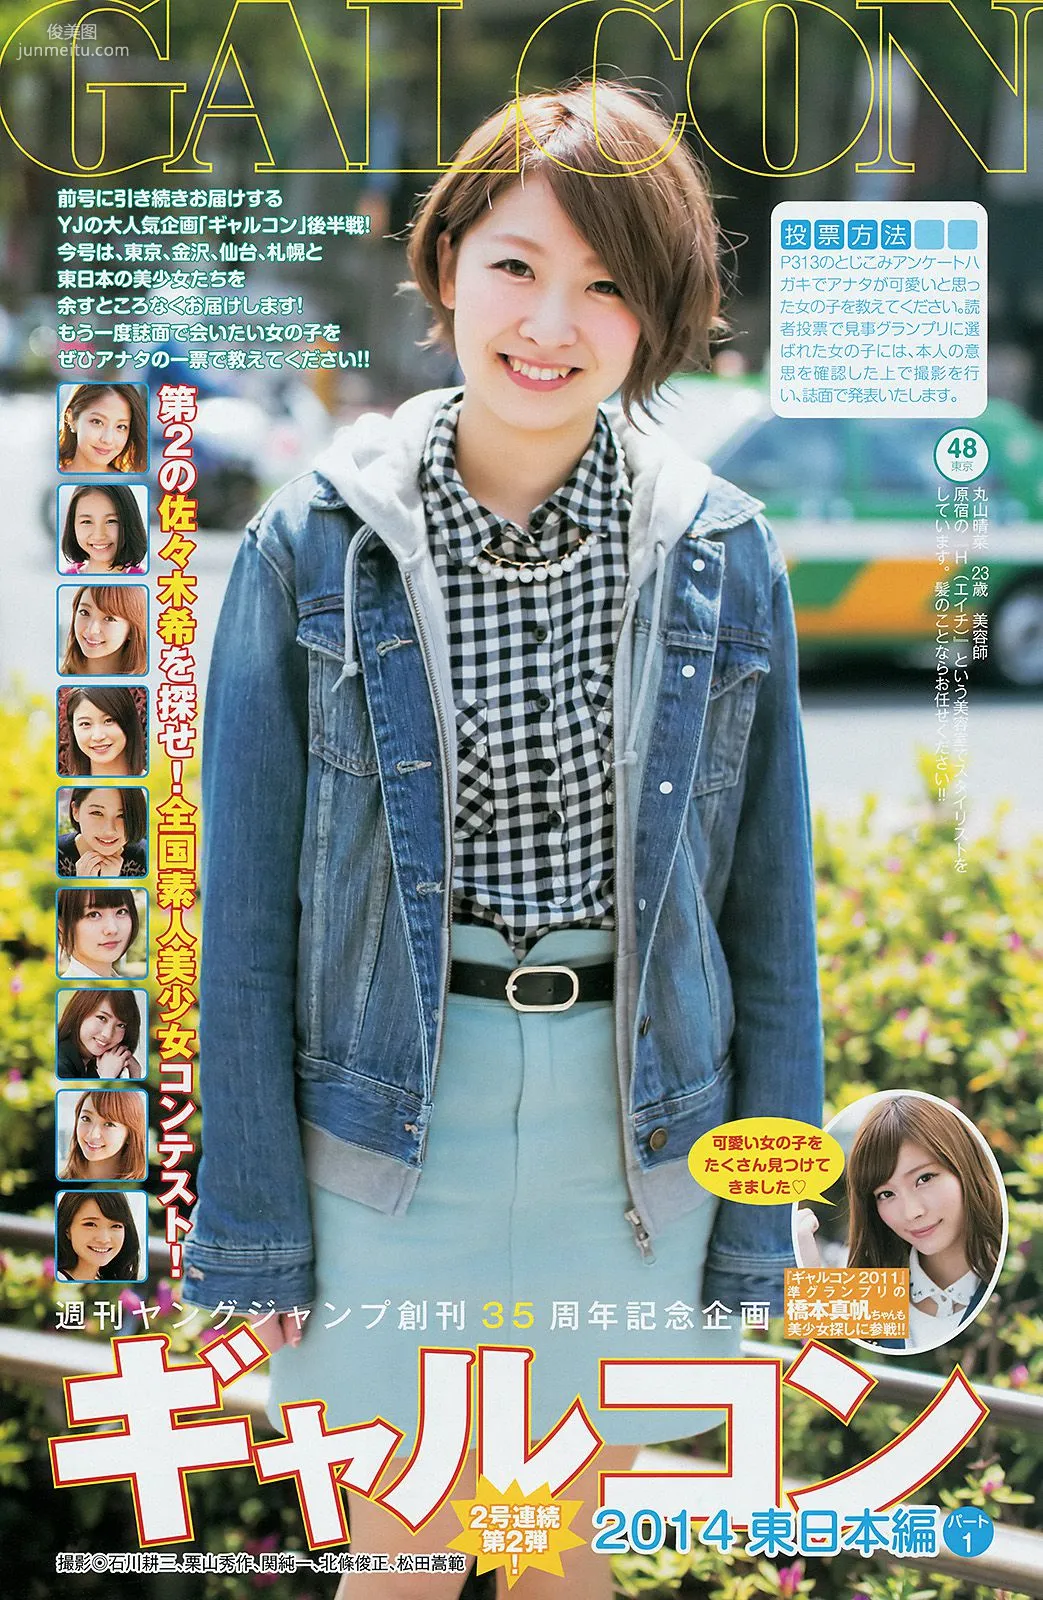 指原莉乃 ギャルコン2014 [Weekly Young Jump] 2014年No.26 写真杂志7